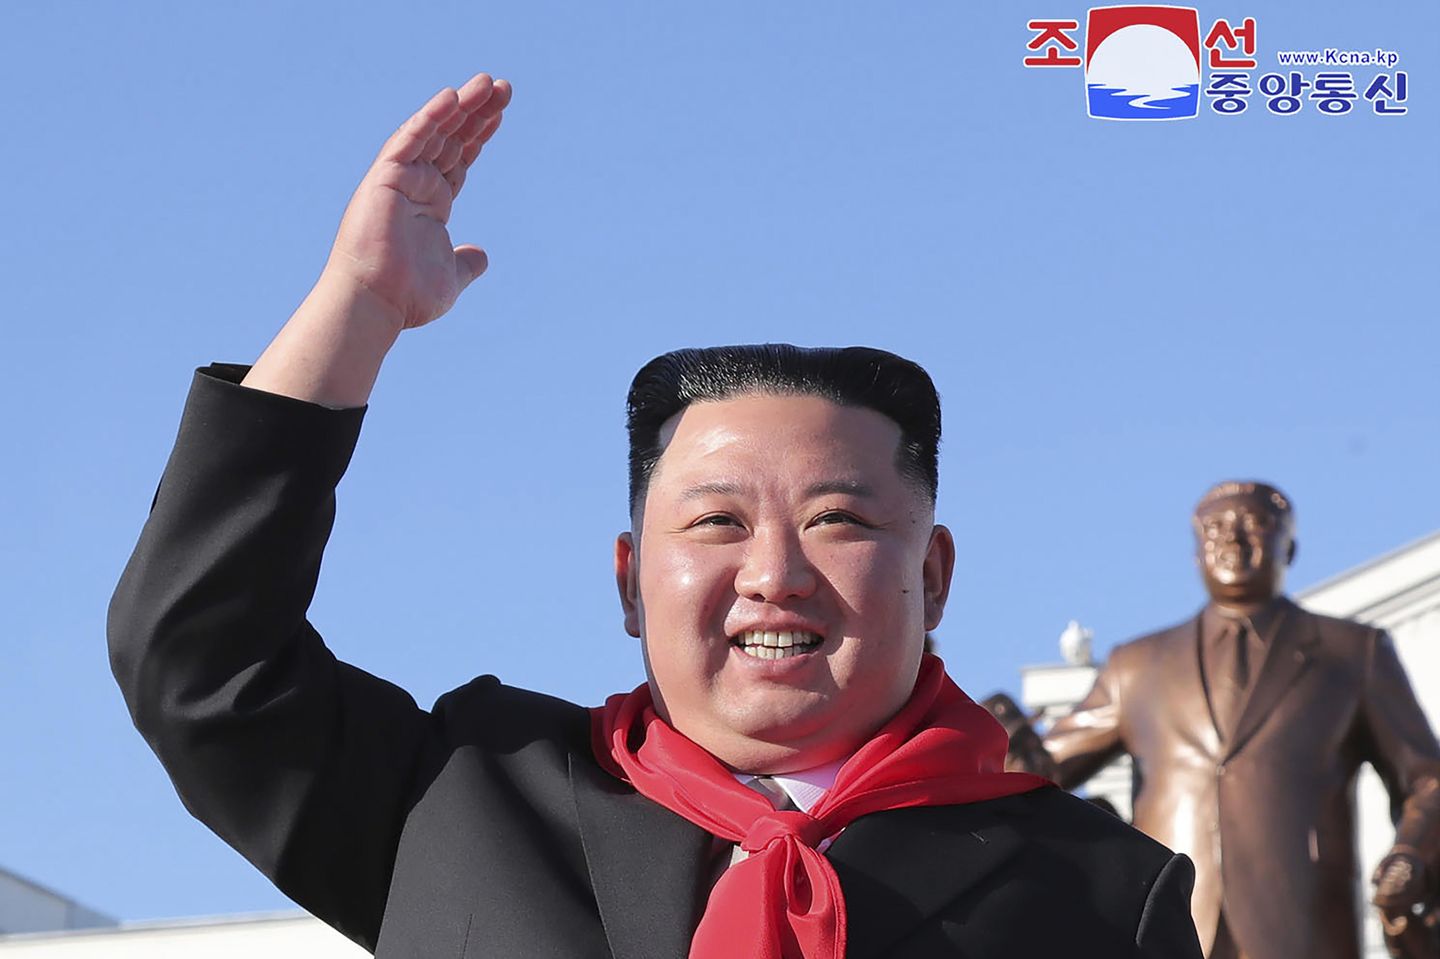 Seul, Kuzey Kore'nin denize doğru bir balistik füze daha ateşlediğini söyledi